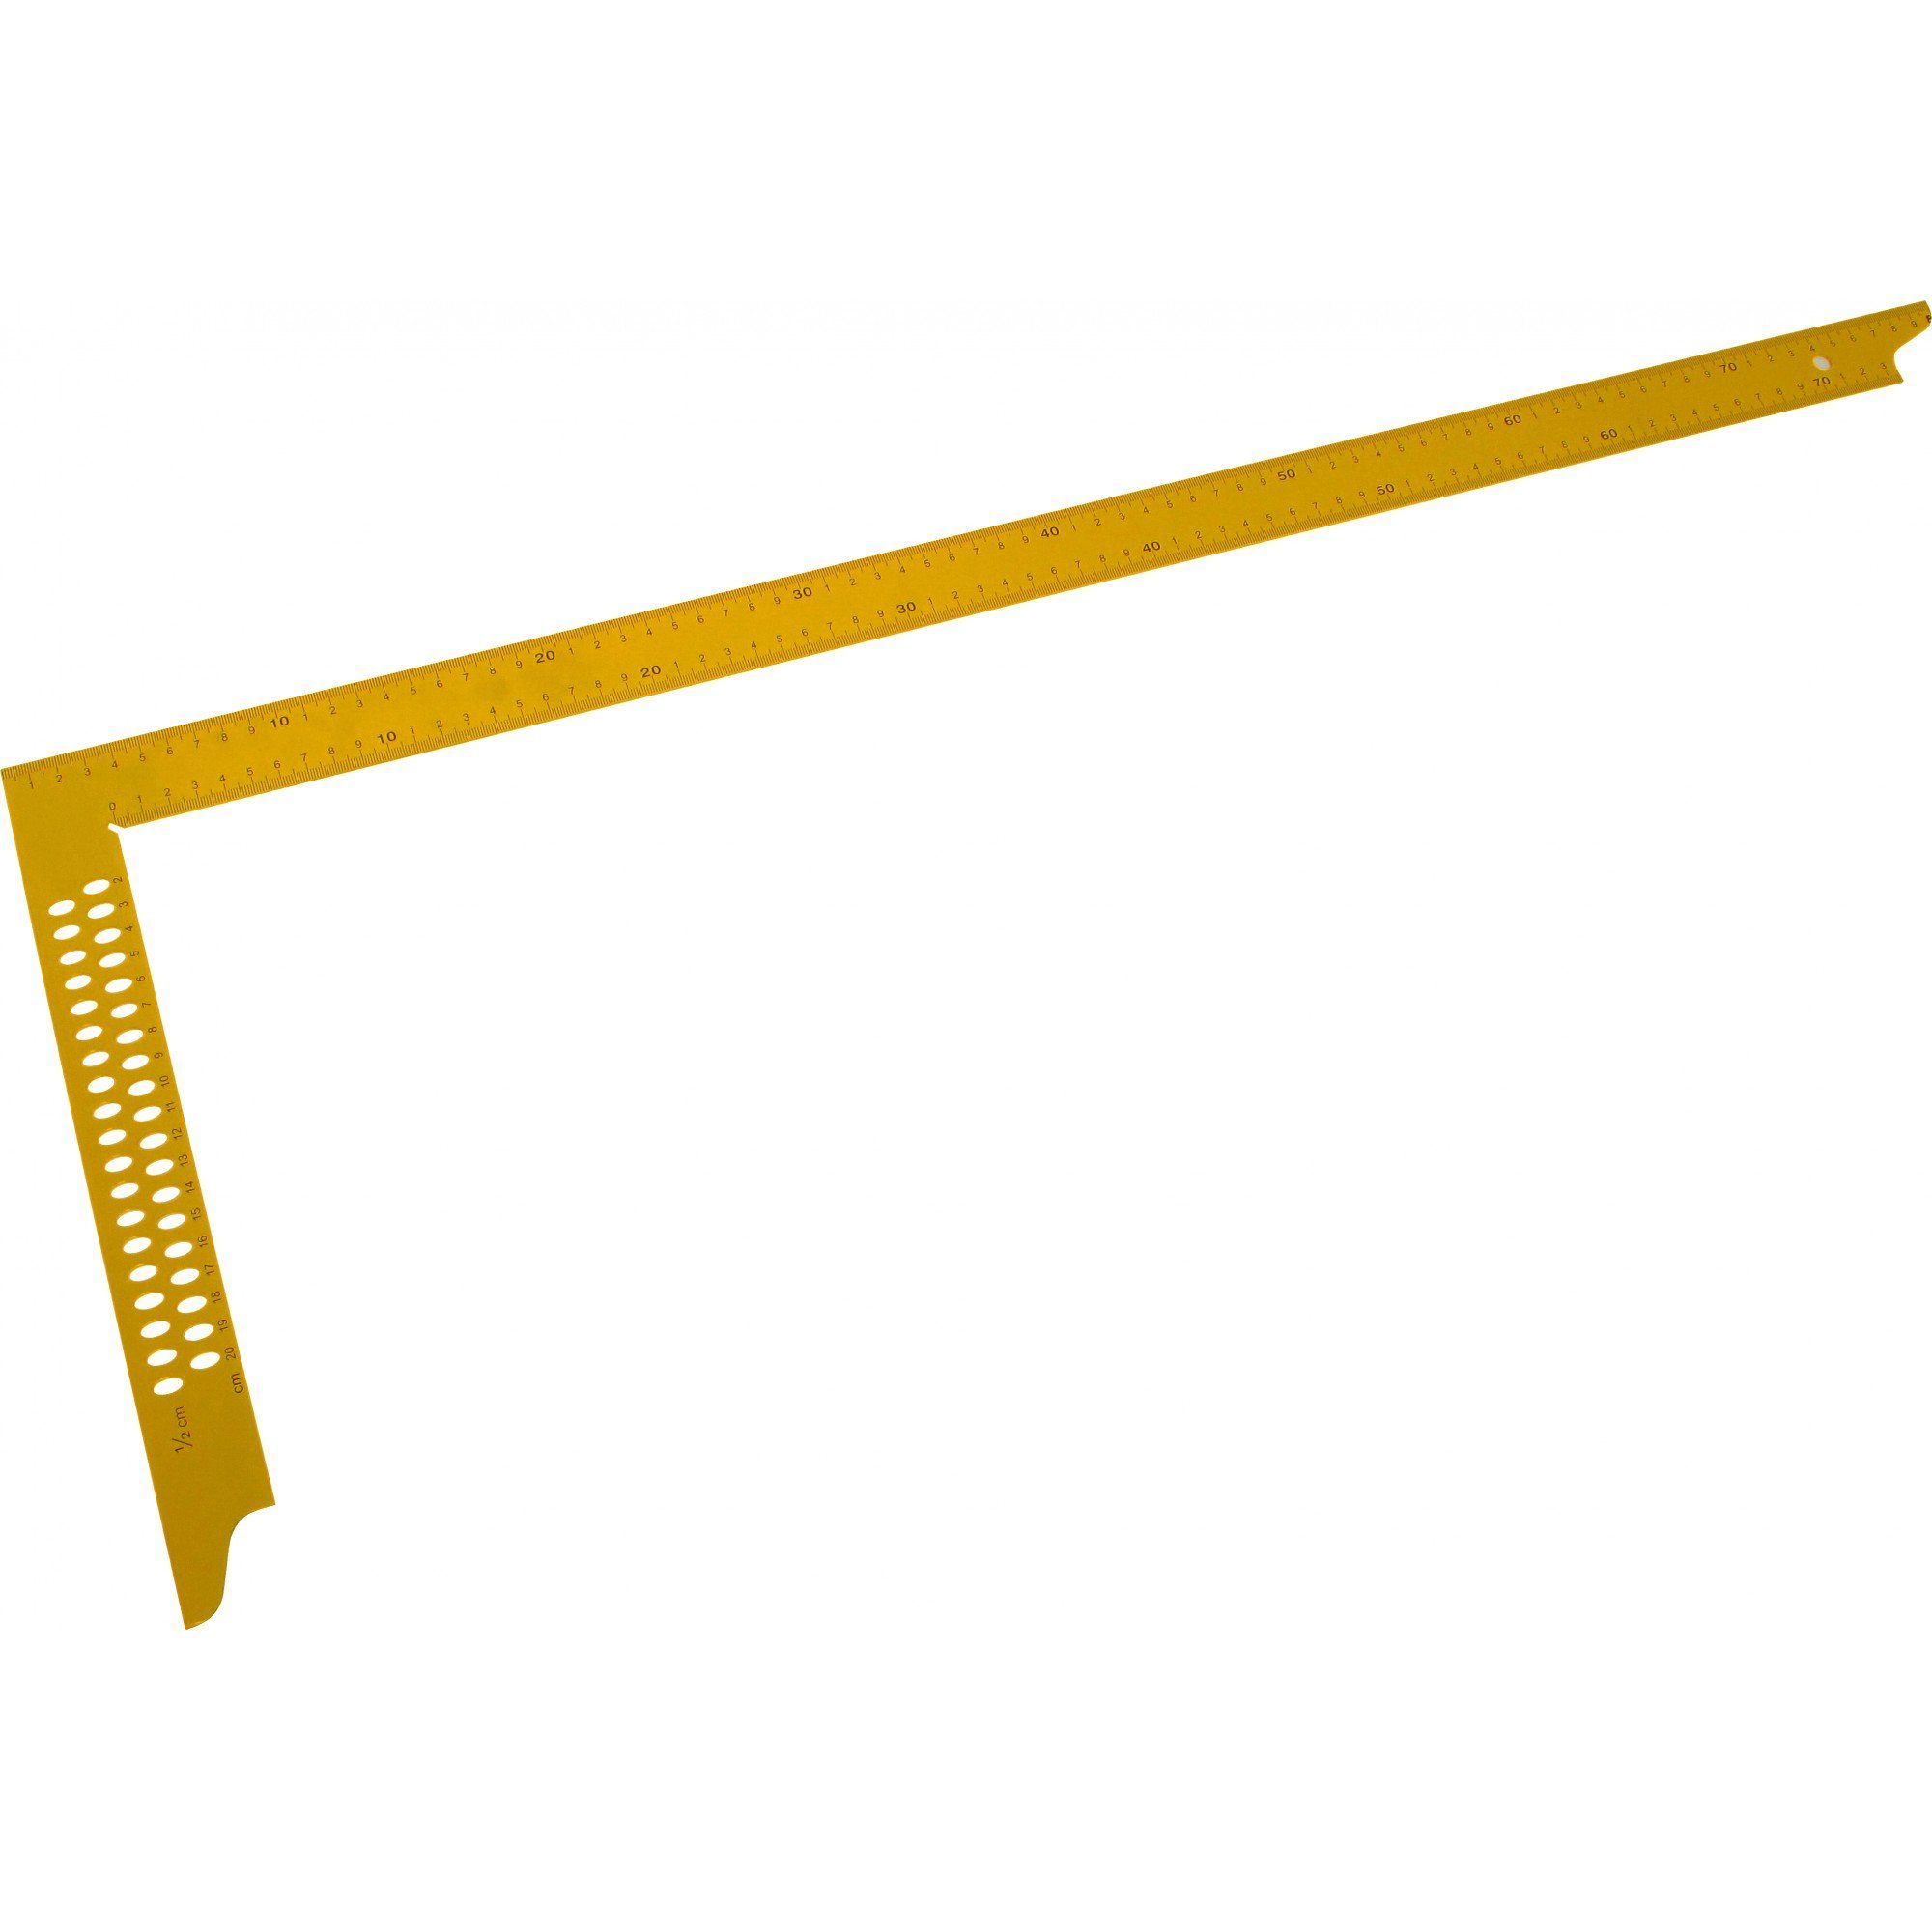 Triuso Zimmermannswinkel Winkel 800 mm gelb lackiert, mit Maßeinteilung und Anreißlöchern